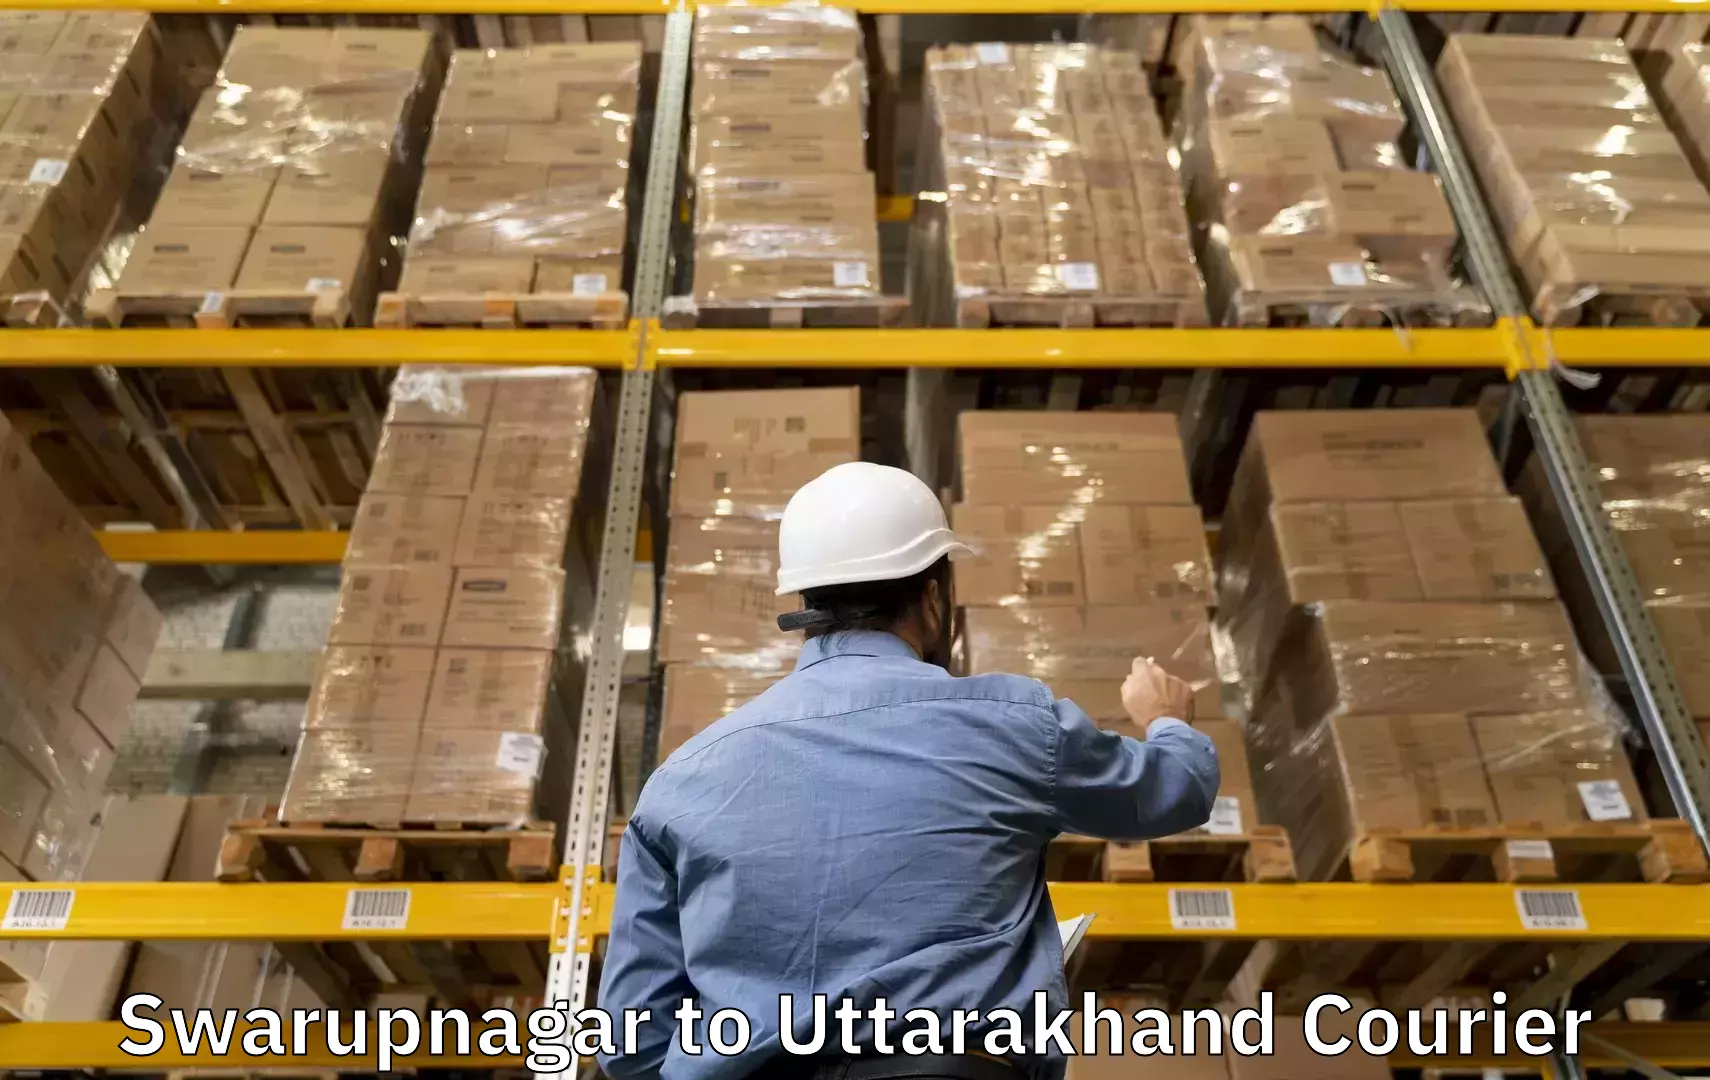 Luggage transport company Swarupnagar to Uttarakhand